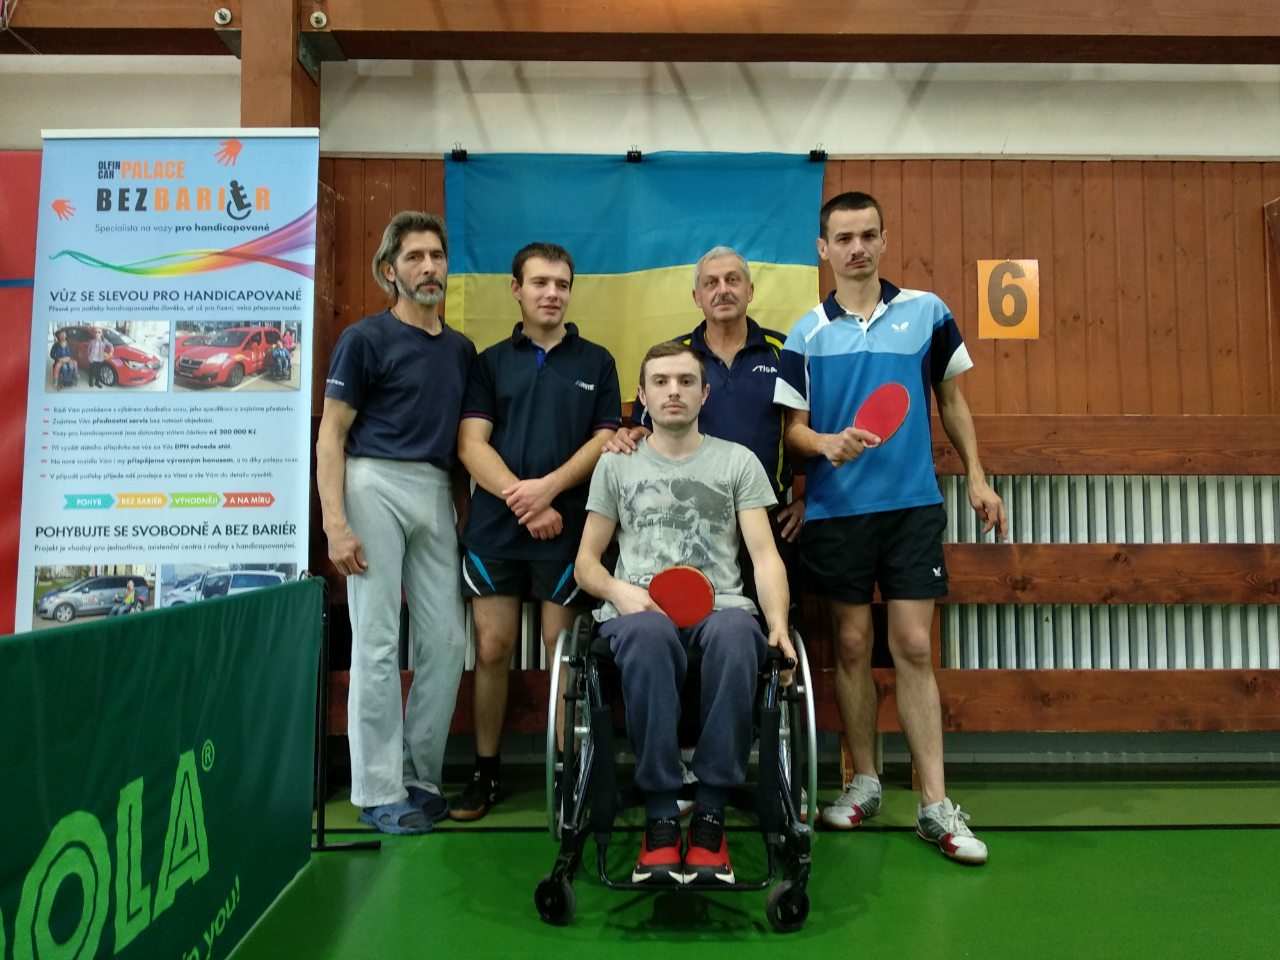 15-18 листопада 2018 року в Чехії відбулись міжнародні змагання спортсменів-інвалідів з настільного тенісу – відкритий кубок міста Градець Кралове.